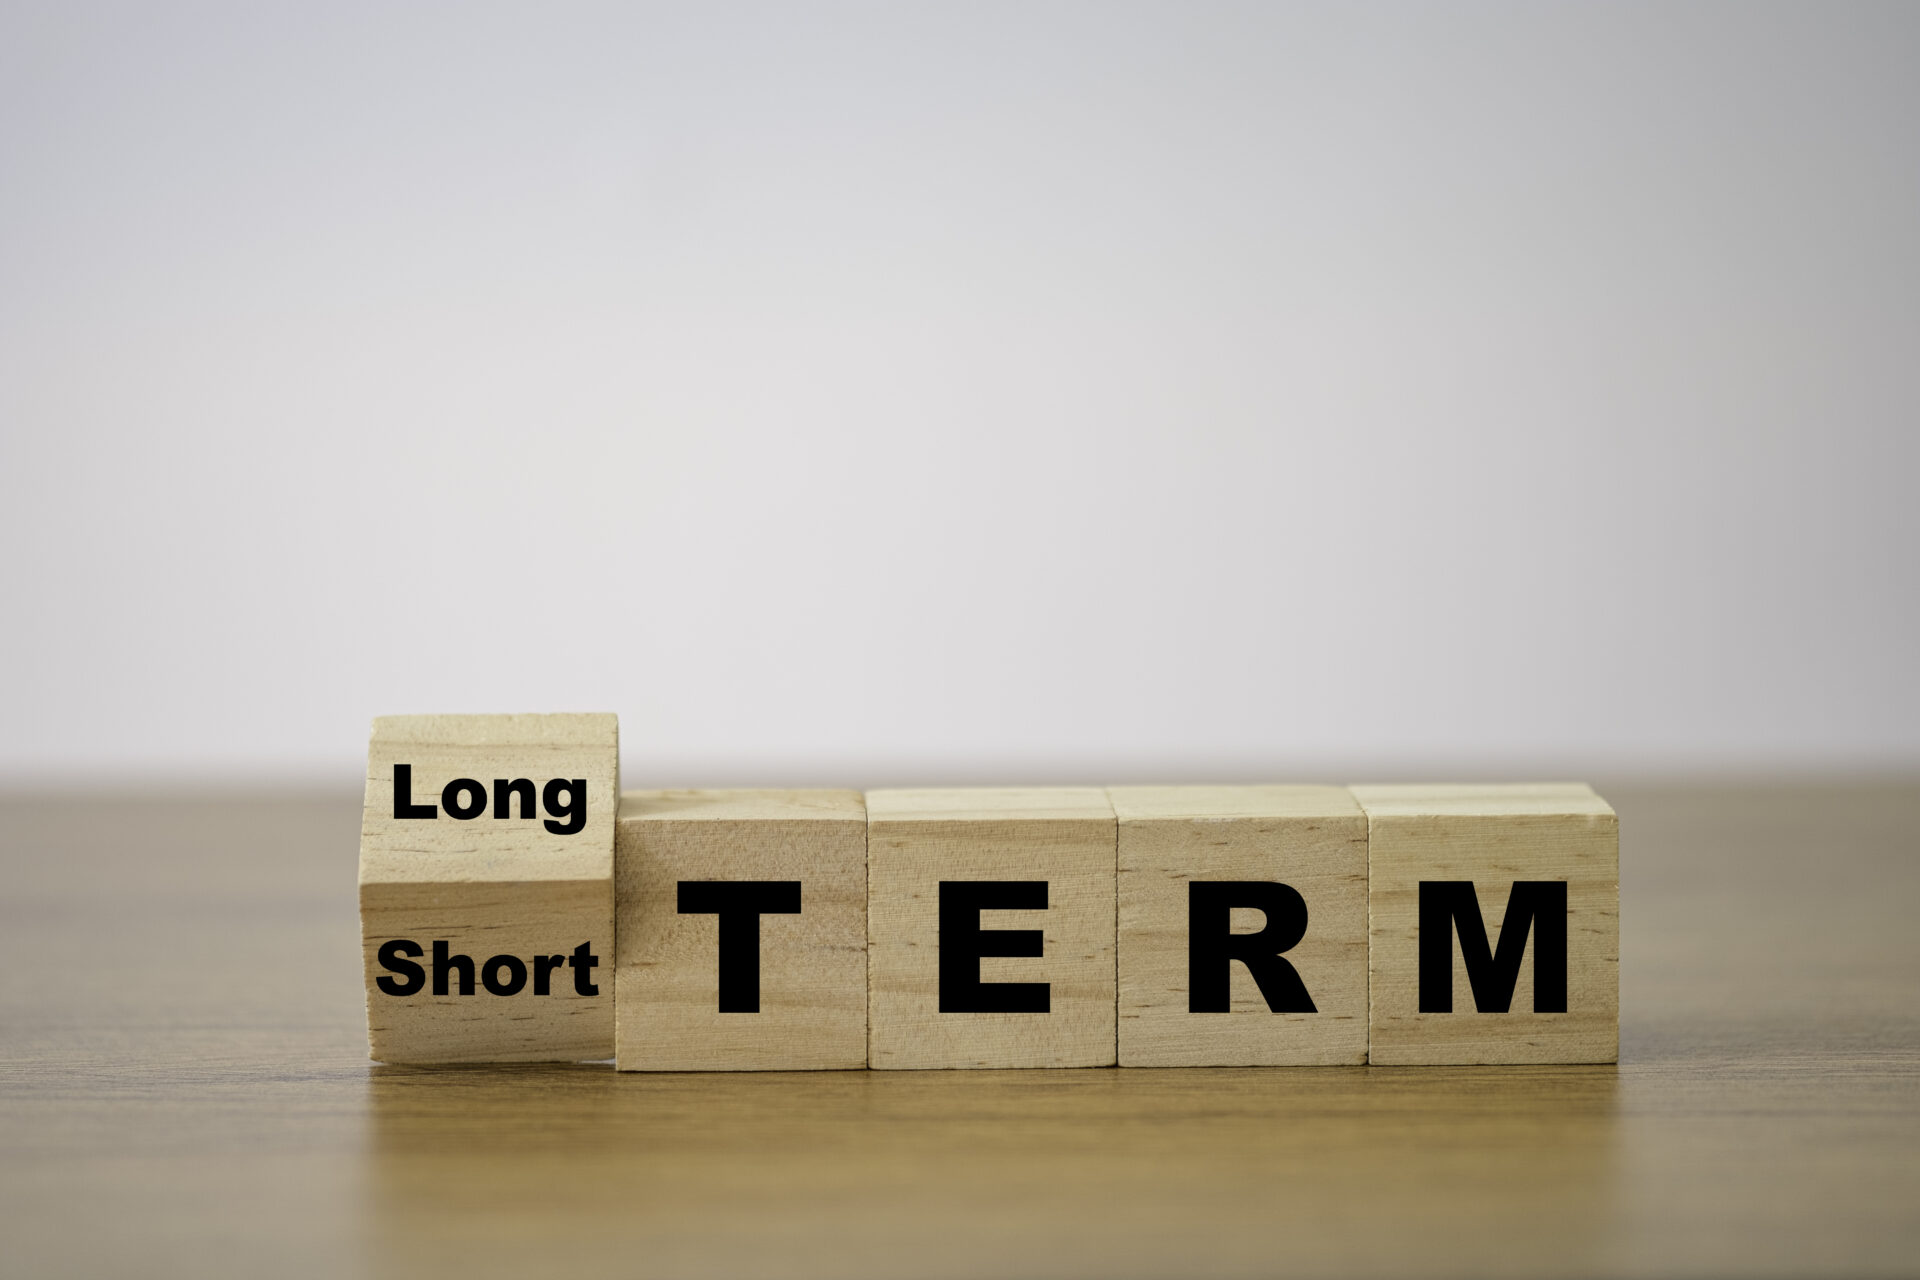 short term loan